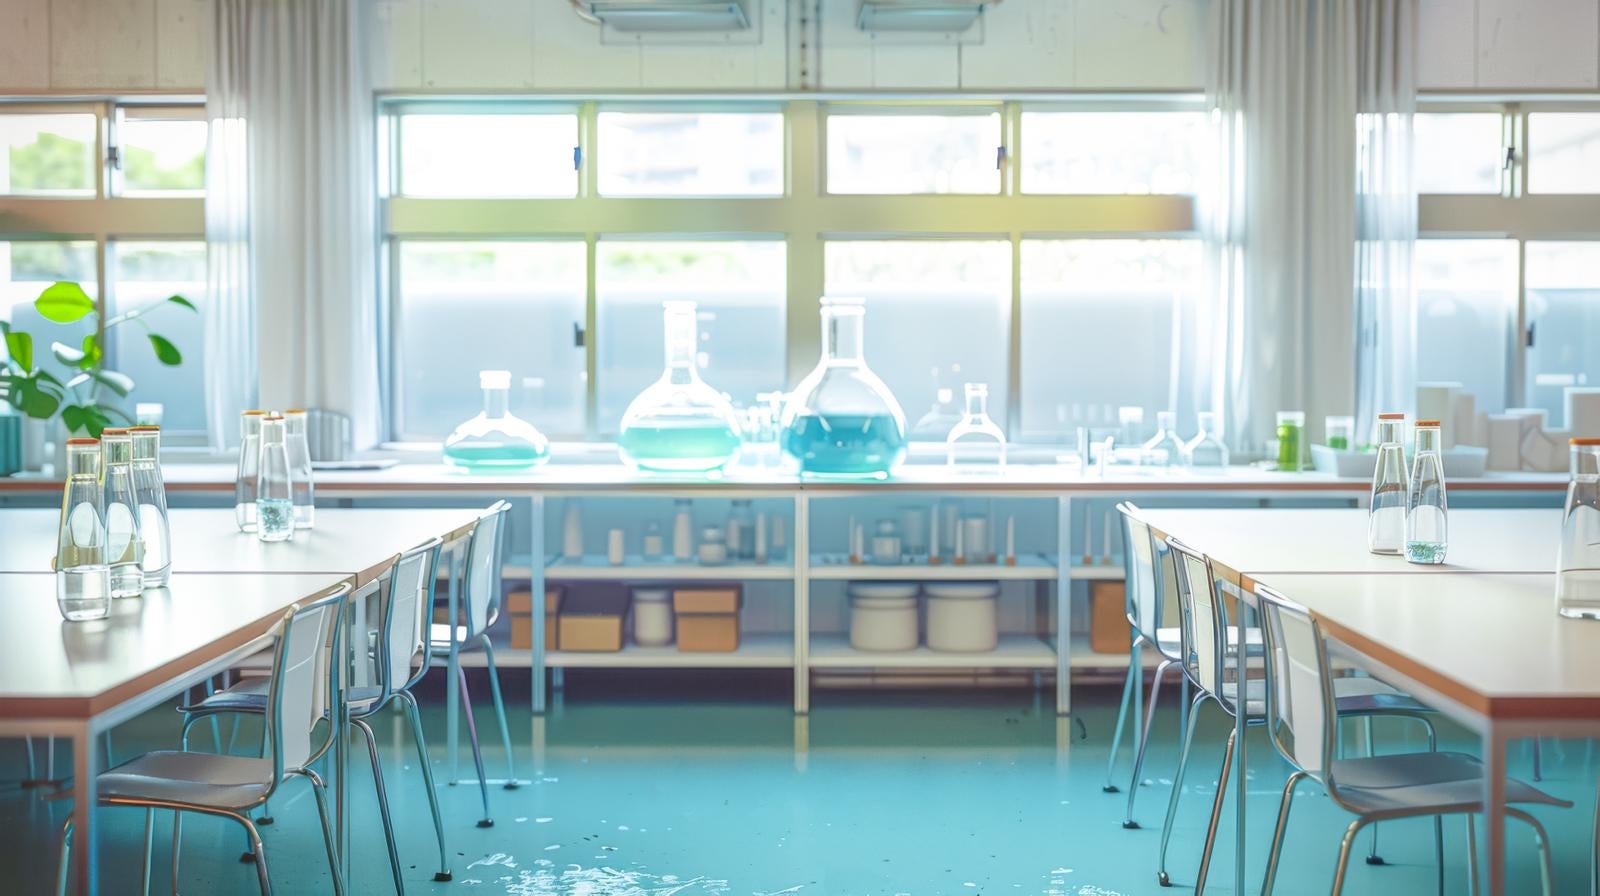 「学校の理科室風」の写真